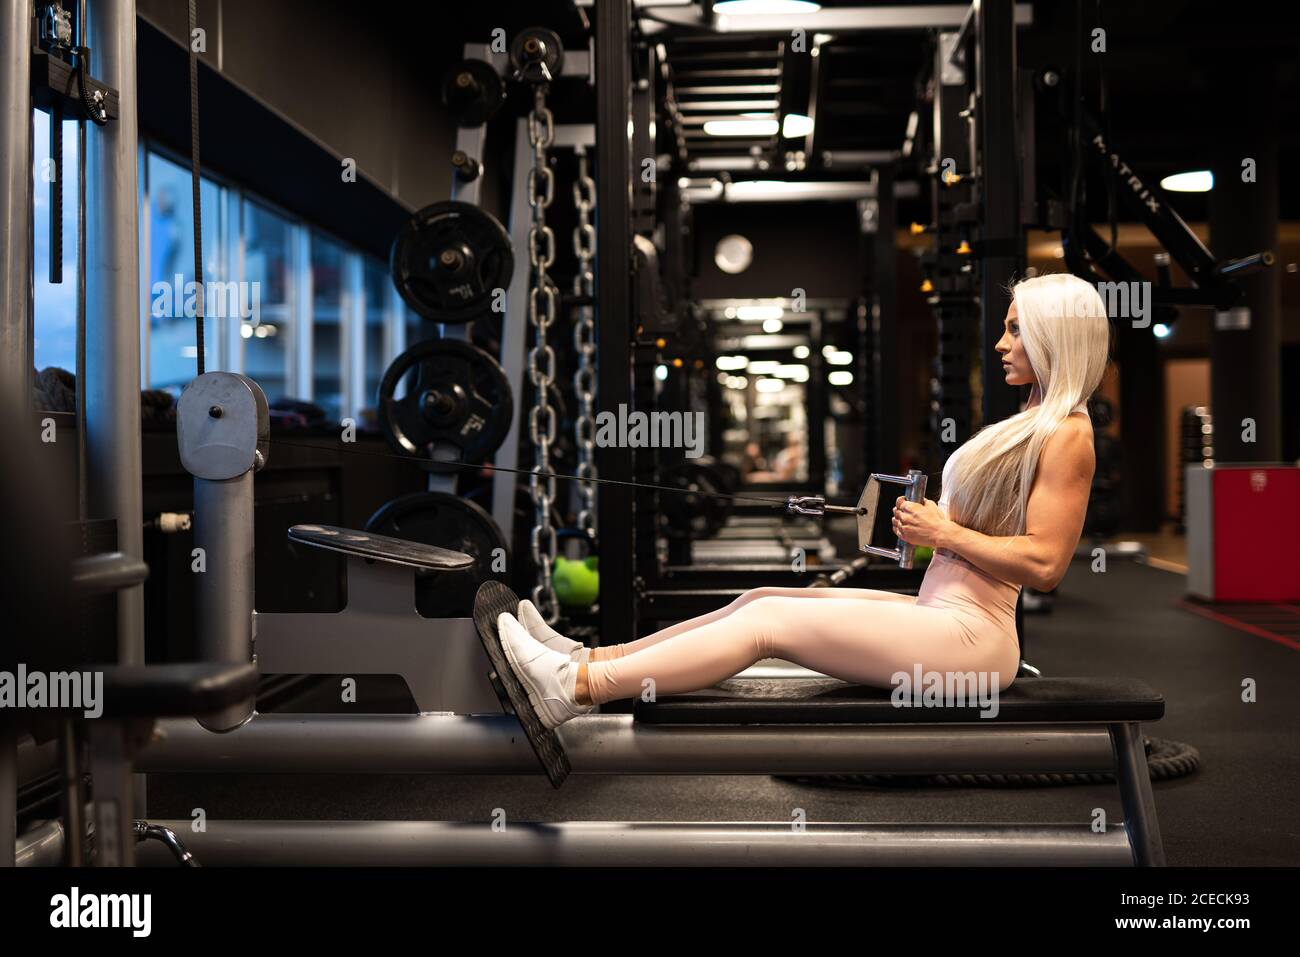 Athletische Frau, die an Trainingsgeräten trainiert Stockfoto